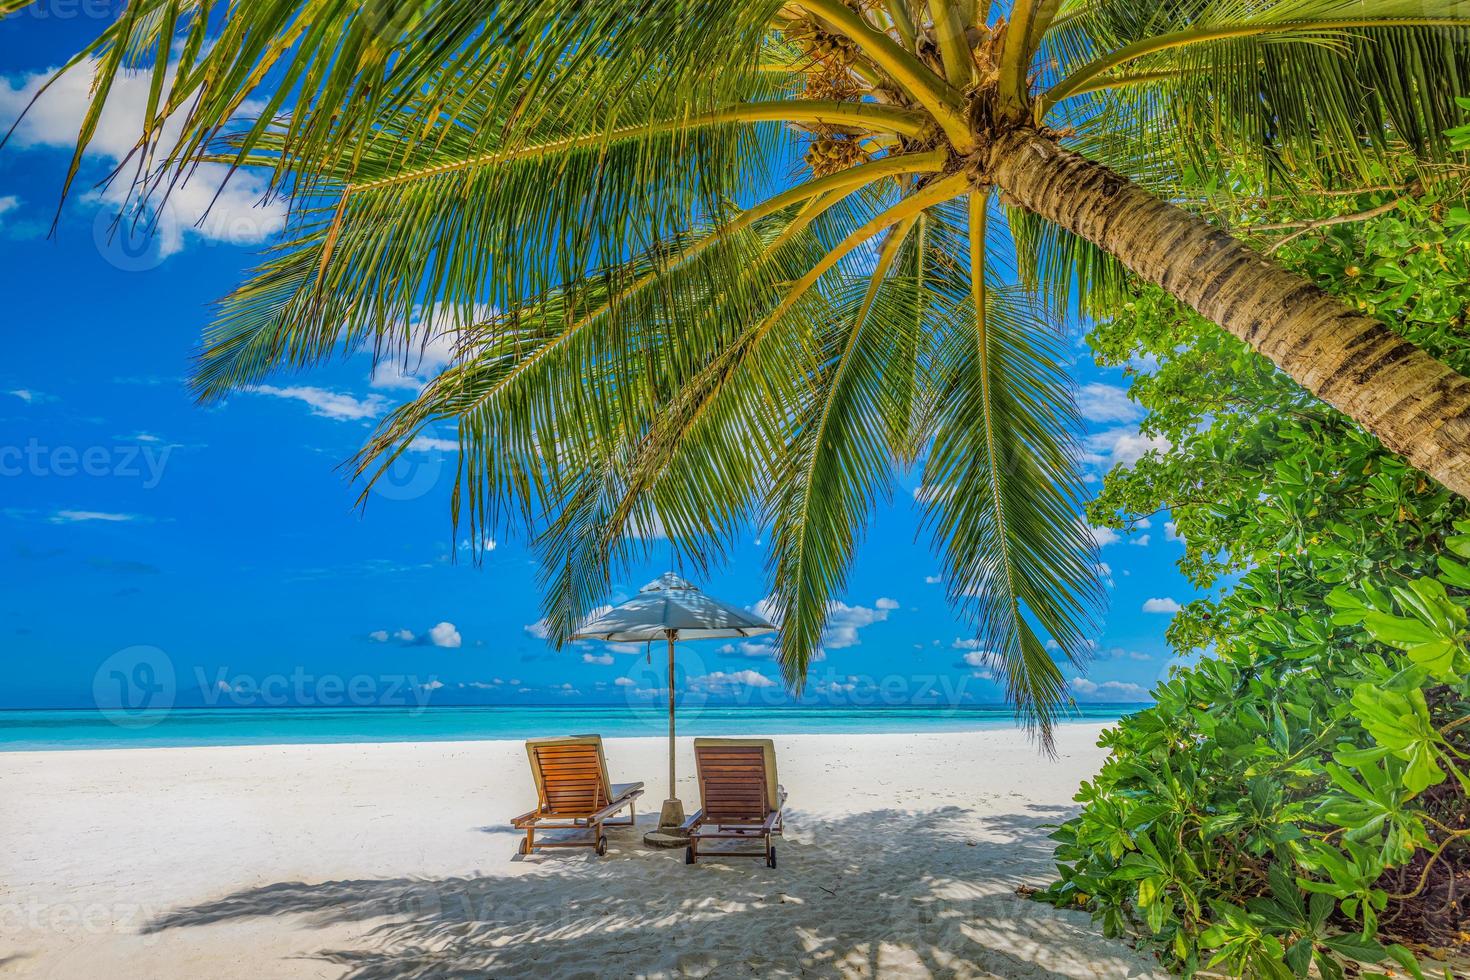 zomer vakantie strand, reizen toneel. detailopname paar stoelen paraplu onder palm bomen, bladeren. zee zand lucht, idyllisch recreatief landschap. zonnig mooi tropisch eiland landschap. verbazingwekkend paradijs foto